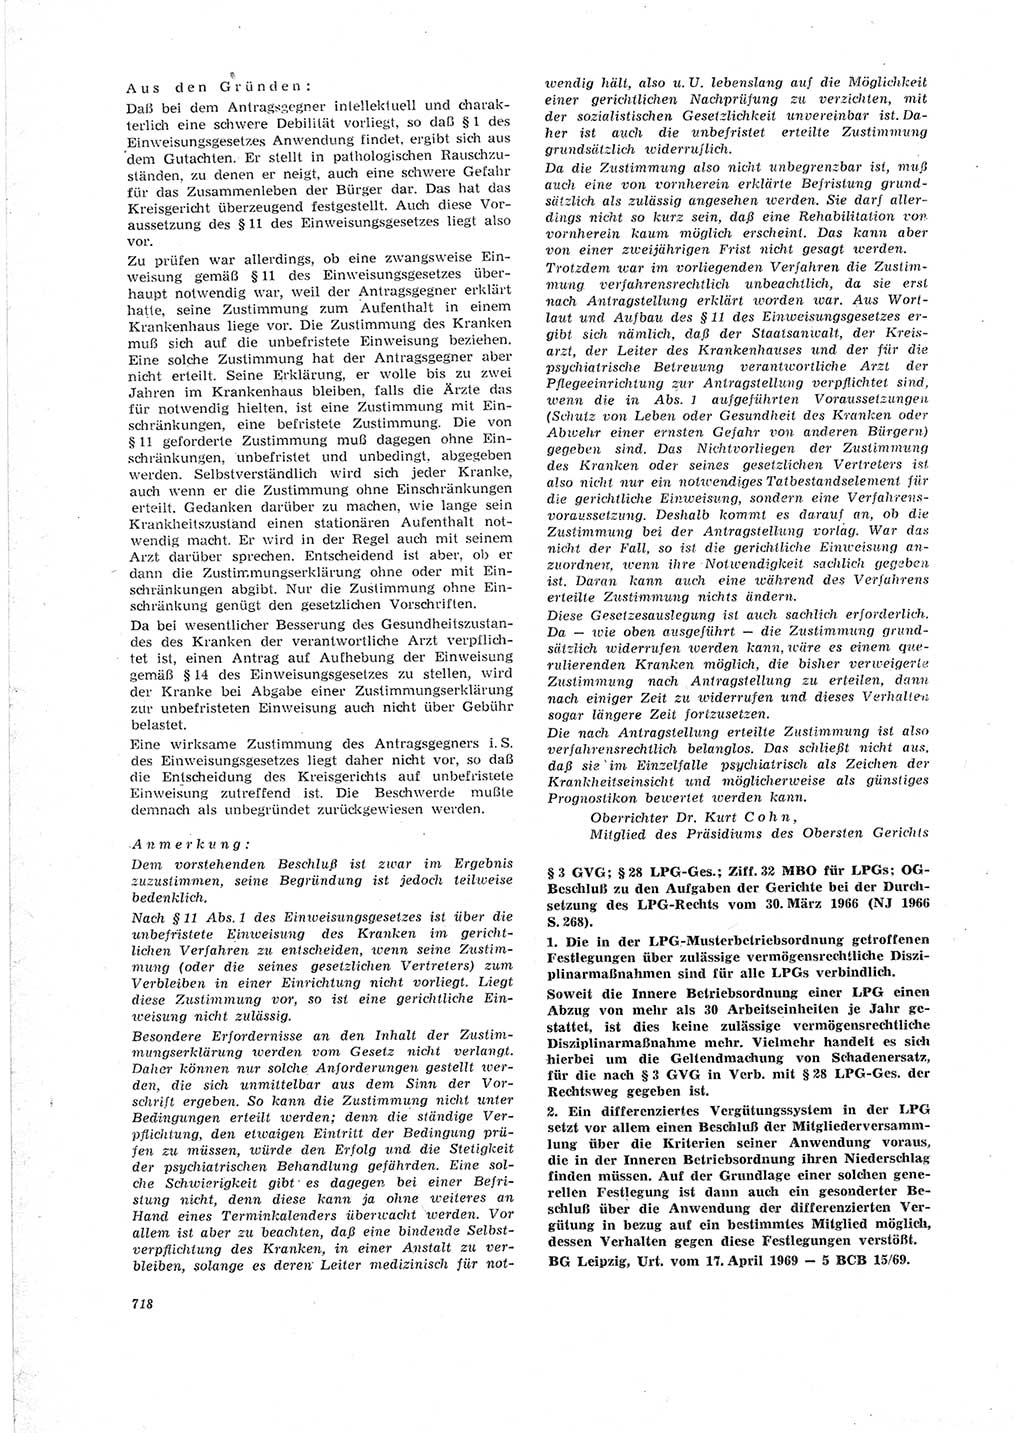 Neue Justiz (NJ), Zeitschrift für Recht und Rechtswissenschaft [Deutsche Demokratische Republik (DDR)], 23. Jahrgang 1969, Seite 718 (NJ DDR 1969, S. 718)